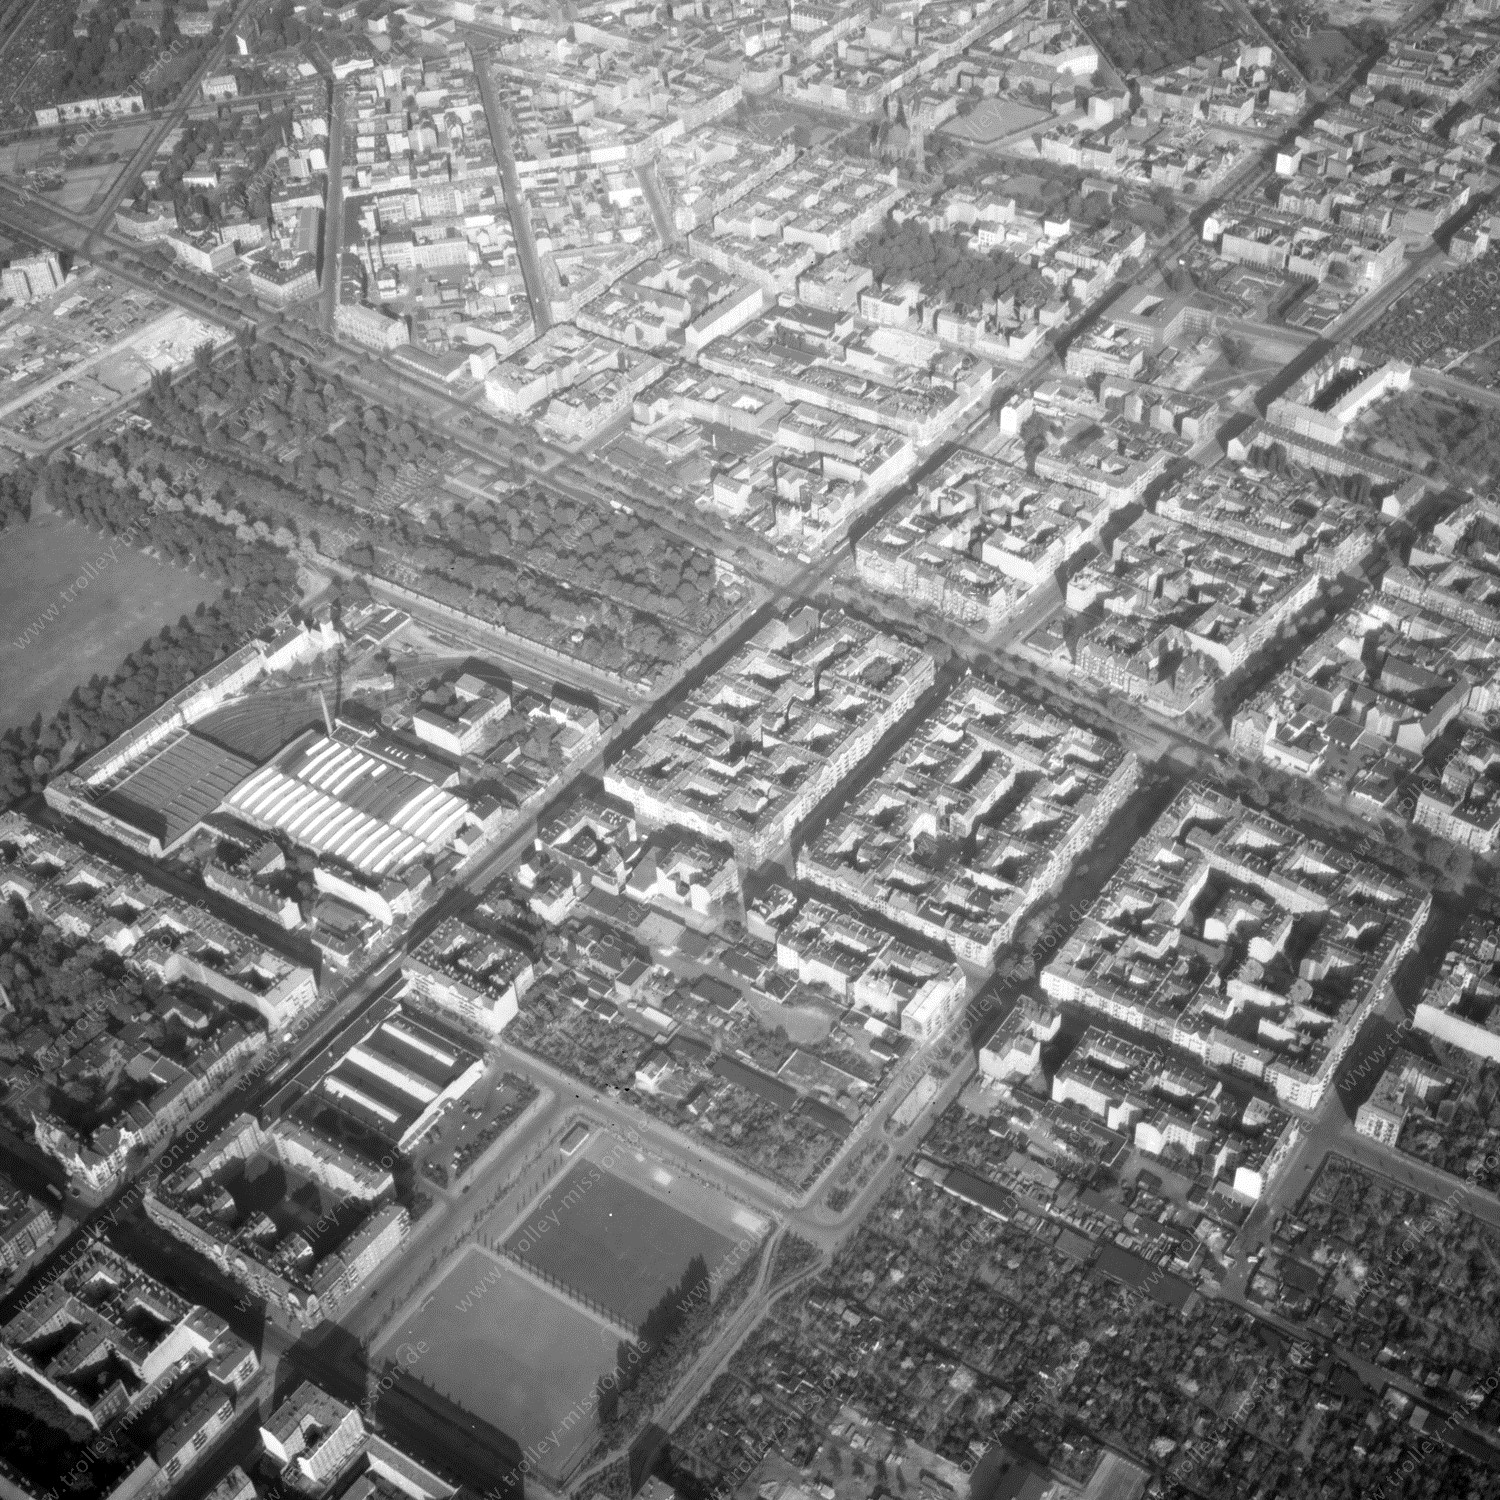 Alte Fotos und Luftbilder von Berlin - Luftbildaufnahme Nr. 11 - Historische Luftaufnahmen von West-Berlin aus dem Jahr 1954 - Flugstrecke Oscar